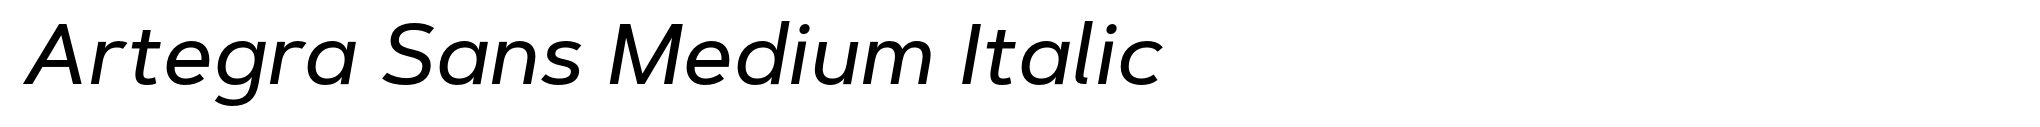 Artegra Sans Medium Italic image